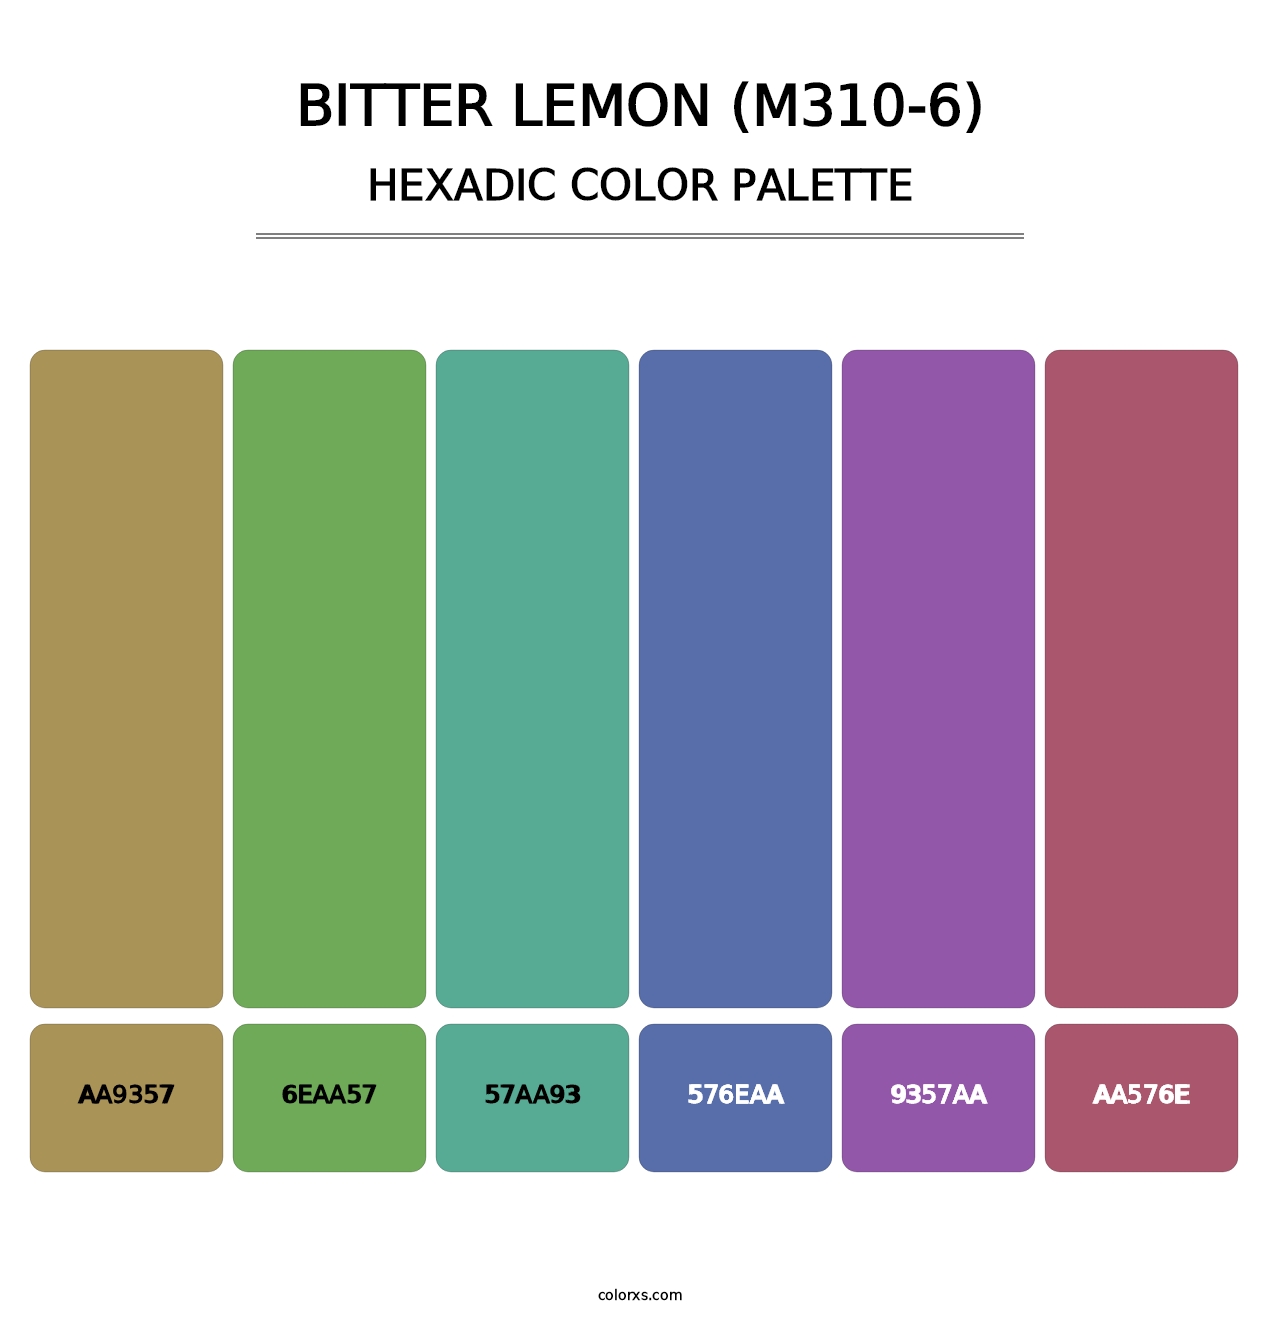 Bitter Lemon (M310-6) - Hexadic Color Palette